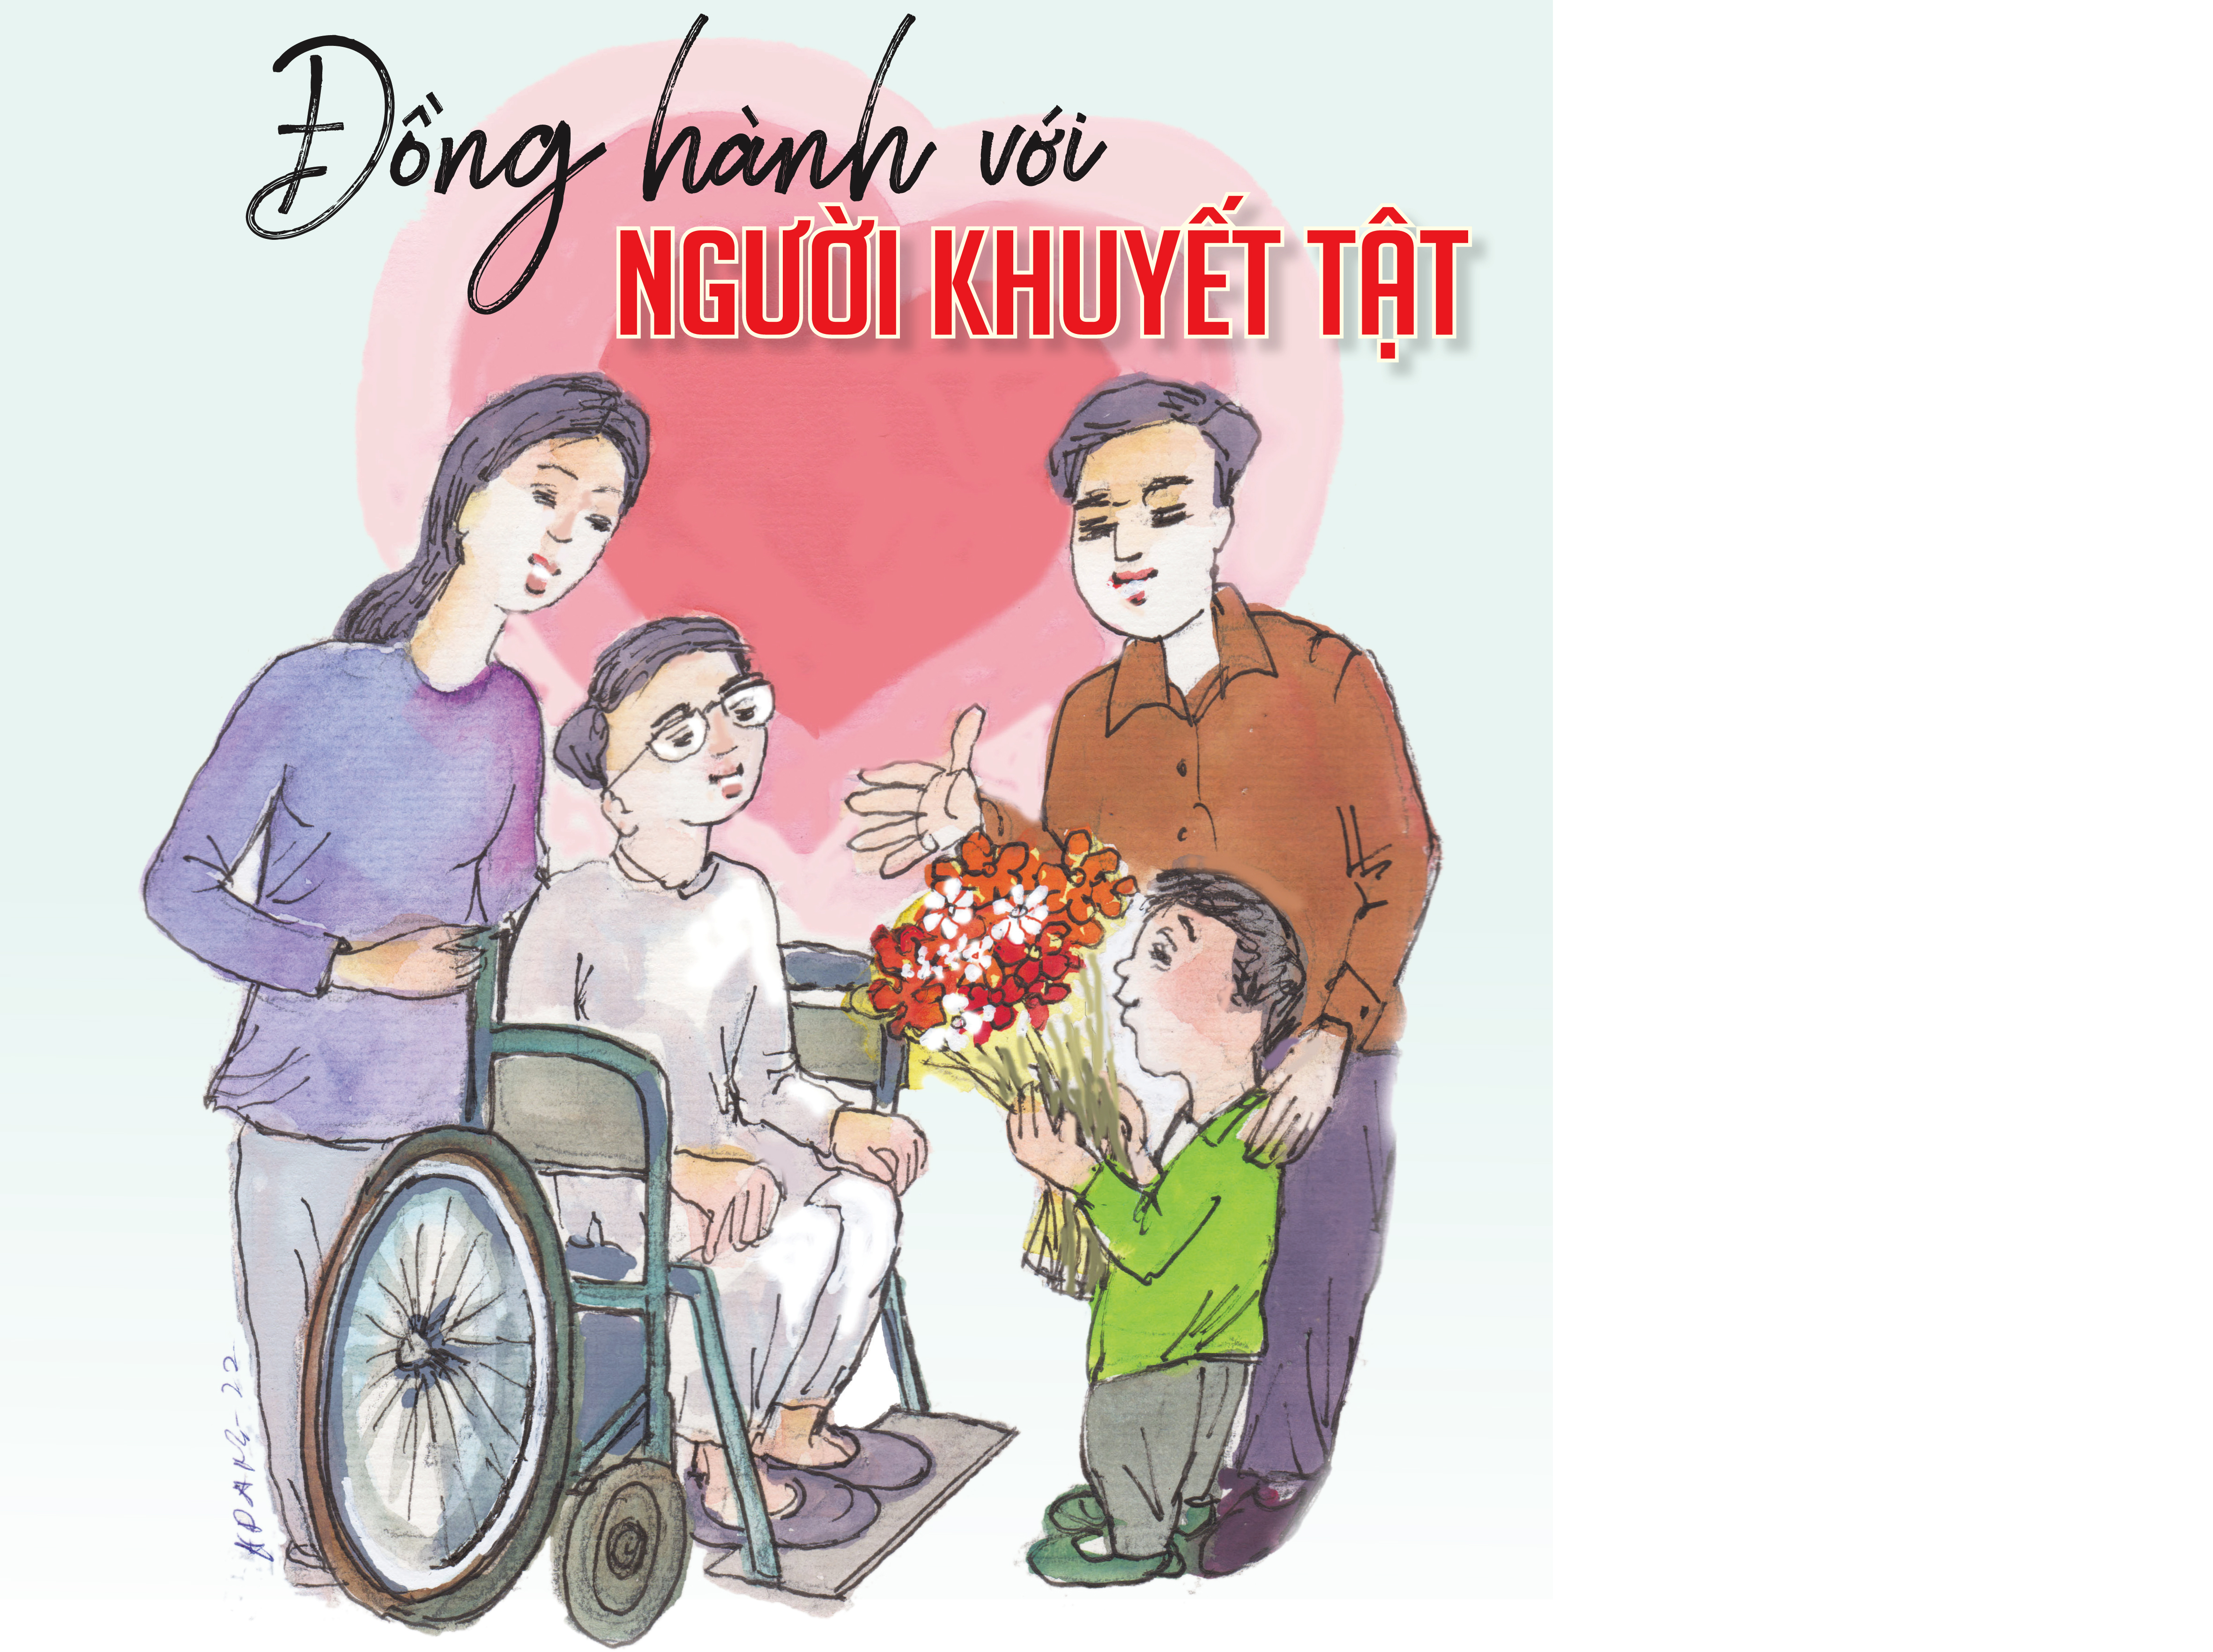 Hỗ trợ người khuyết tật hòa nhập cộng đồng